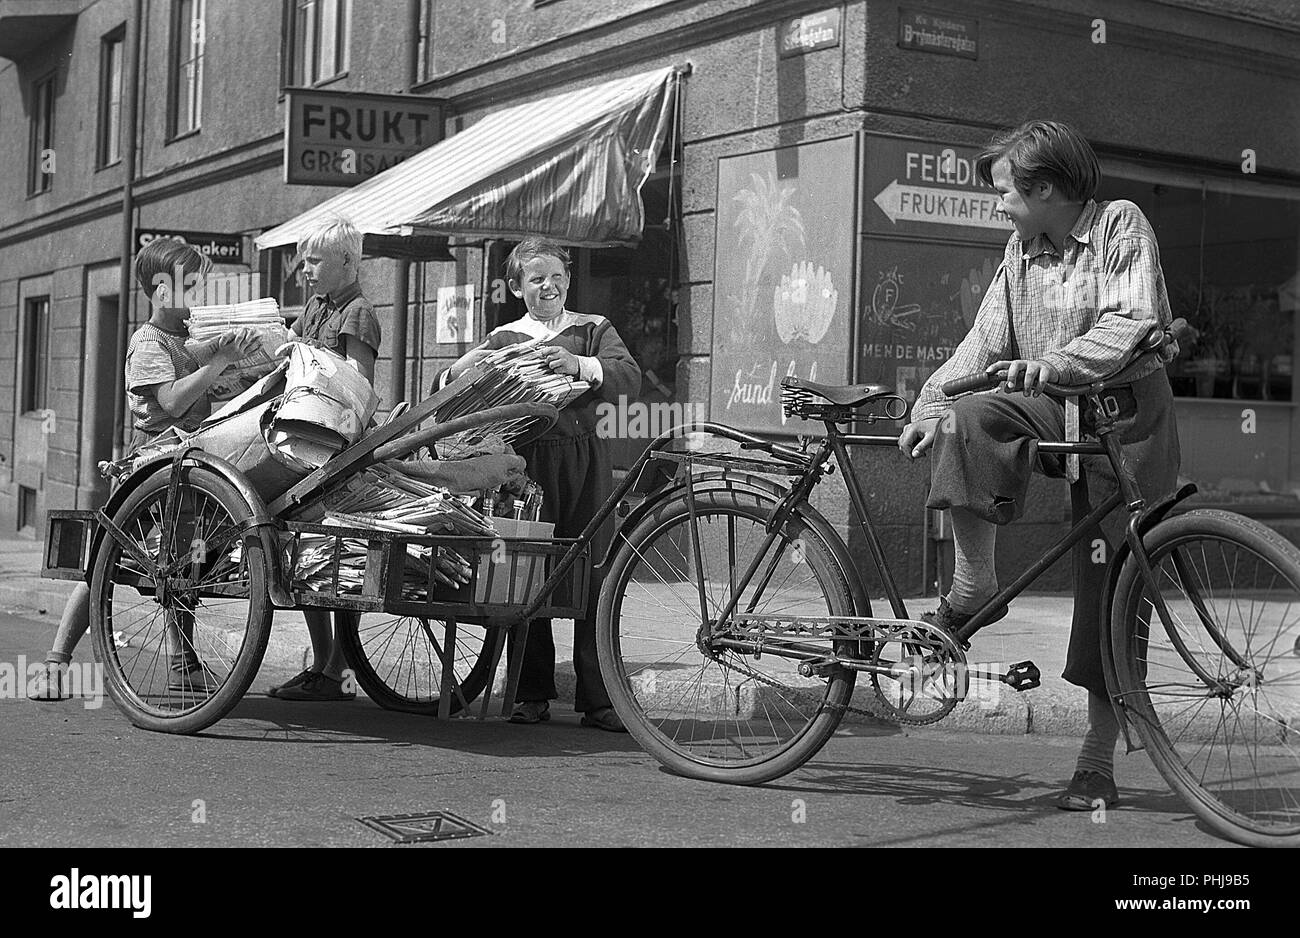 Negli anni Quaranta i bambini. Scena da film svedese Kvarterets olycksfågel 1947. I ragazzi stanno lavorando extra come messaggeri di bicicletta e facendo le consegne di guadagnare soldi extra. La Svezia 1947 Foto Stock